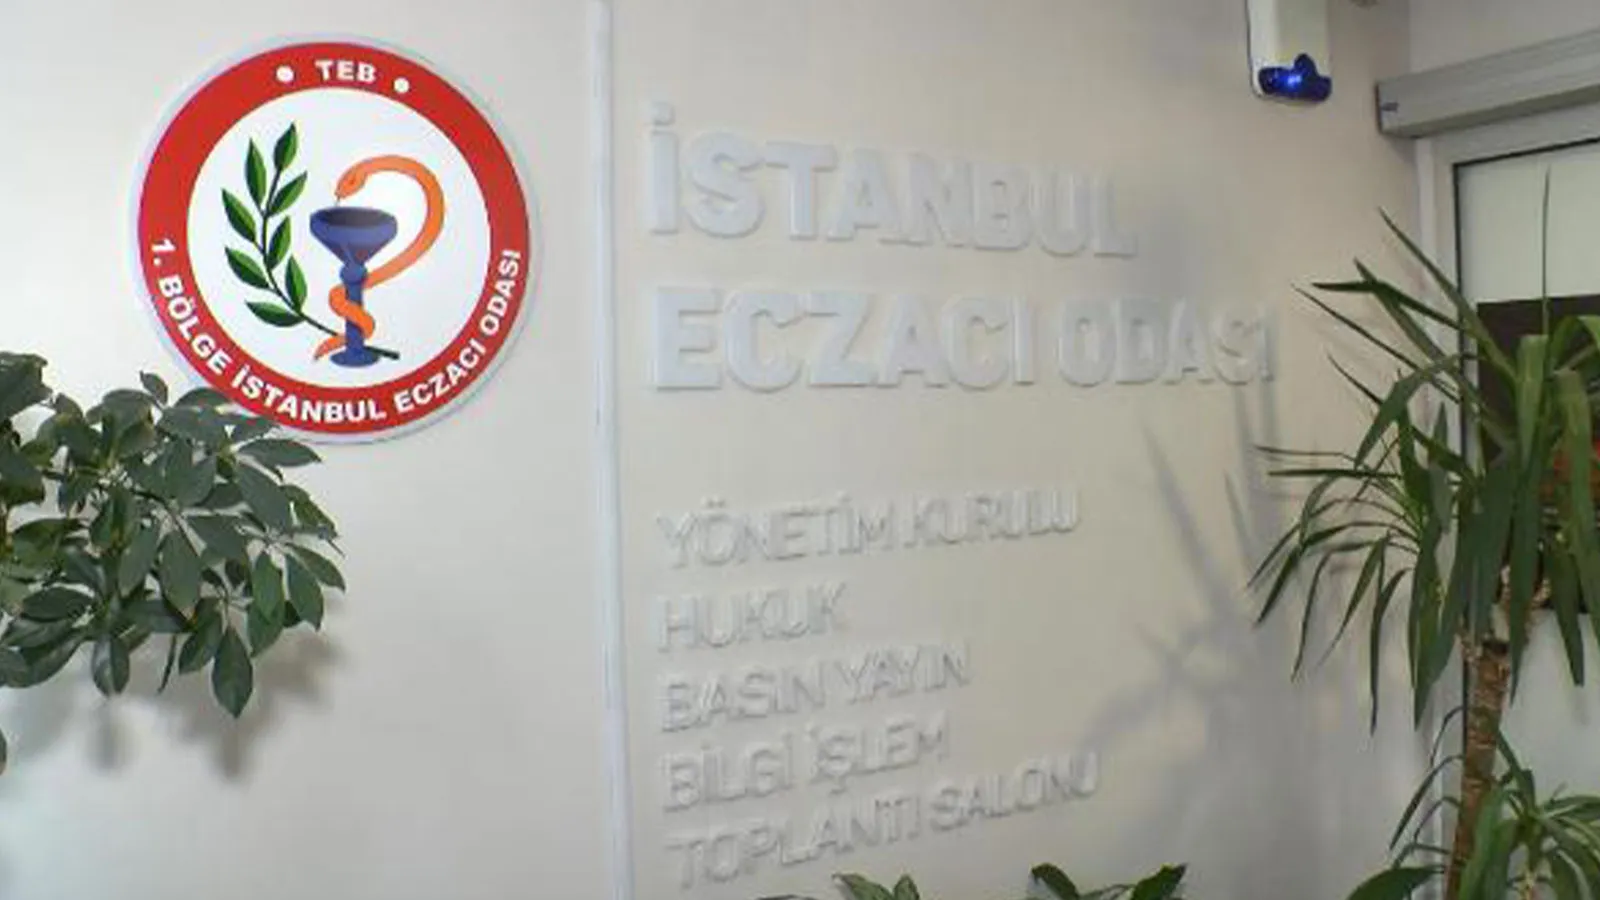 İstanbul Eczacı Odası, Türk Tabiplerİ Birliği Merkez Konseyi Üyelerinin Görevden Alınmasına Tepki Gösterdi